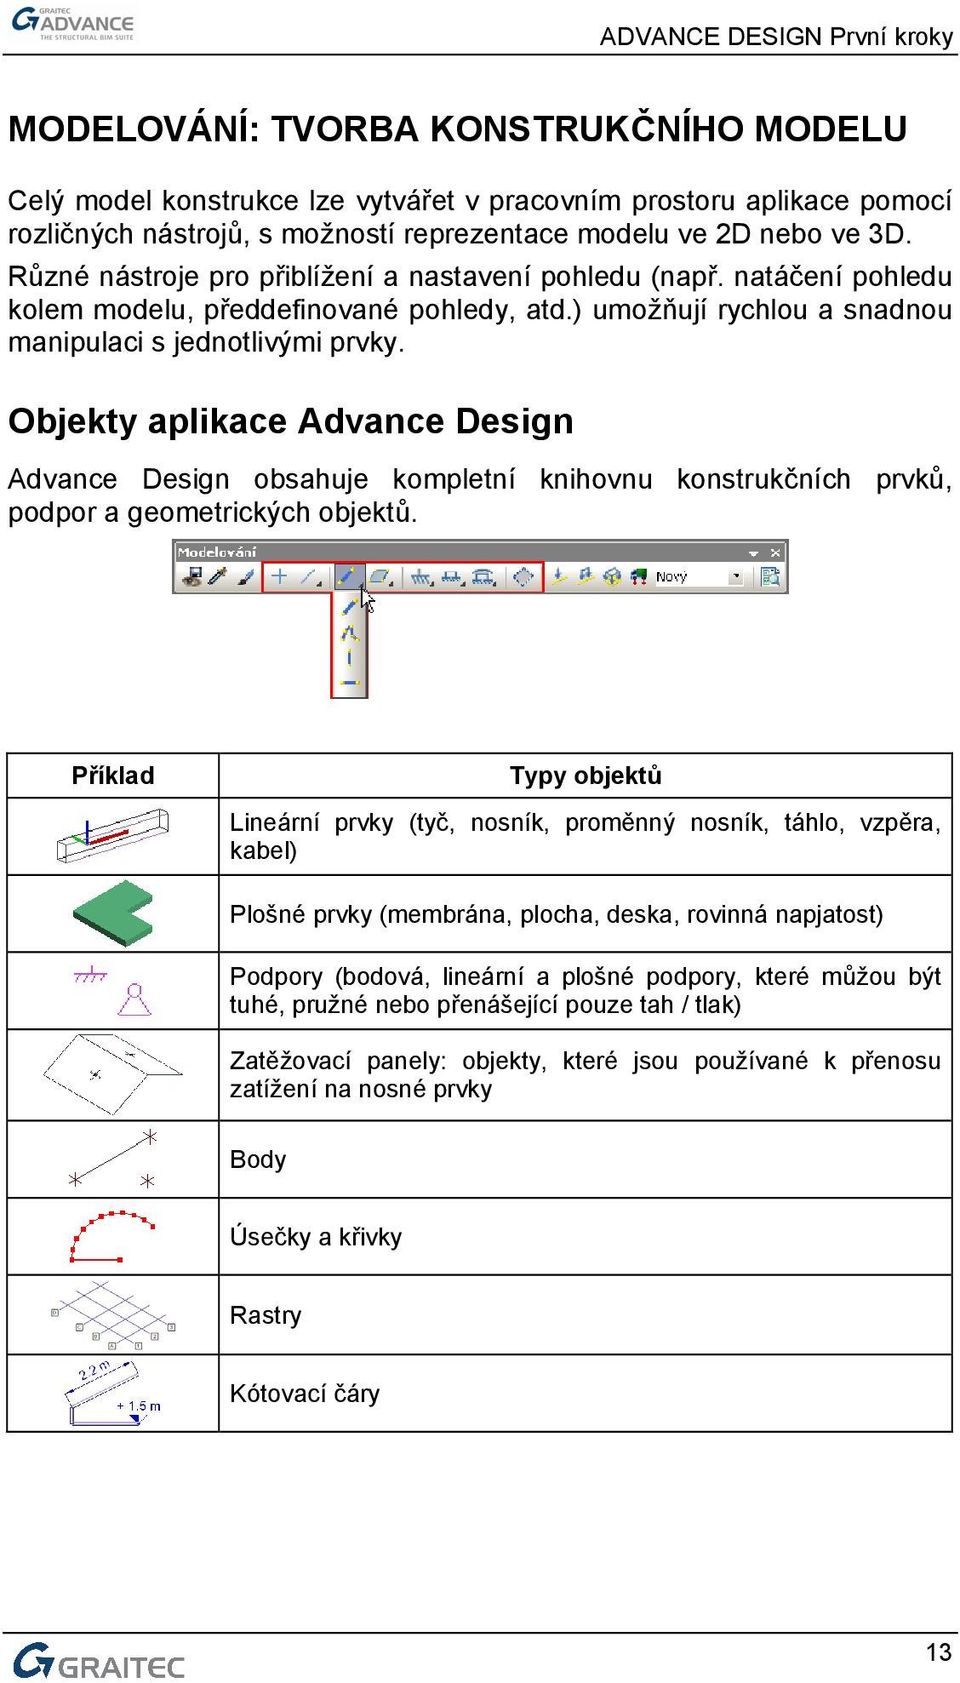 Objekty aplikace Advance Design Advance Design obsahuje kompletní knihovnu konstrukčních prvků, podpor a geometrických objektů.